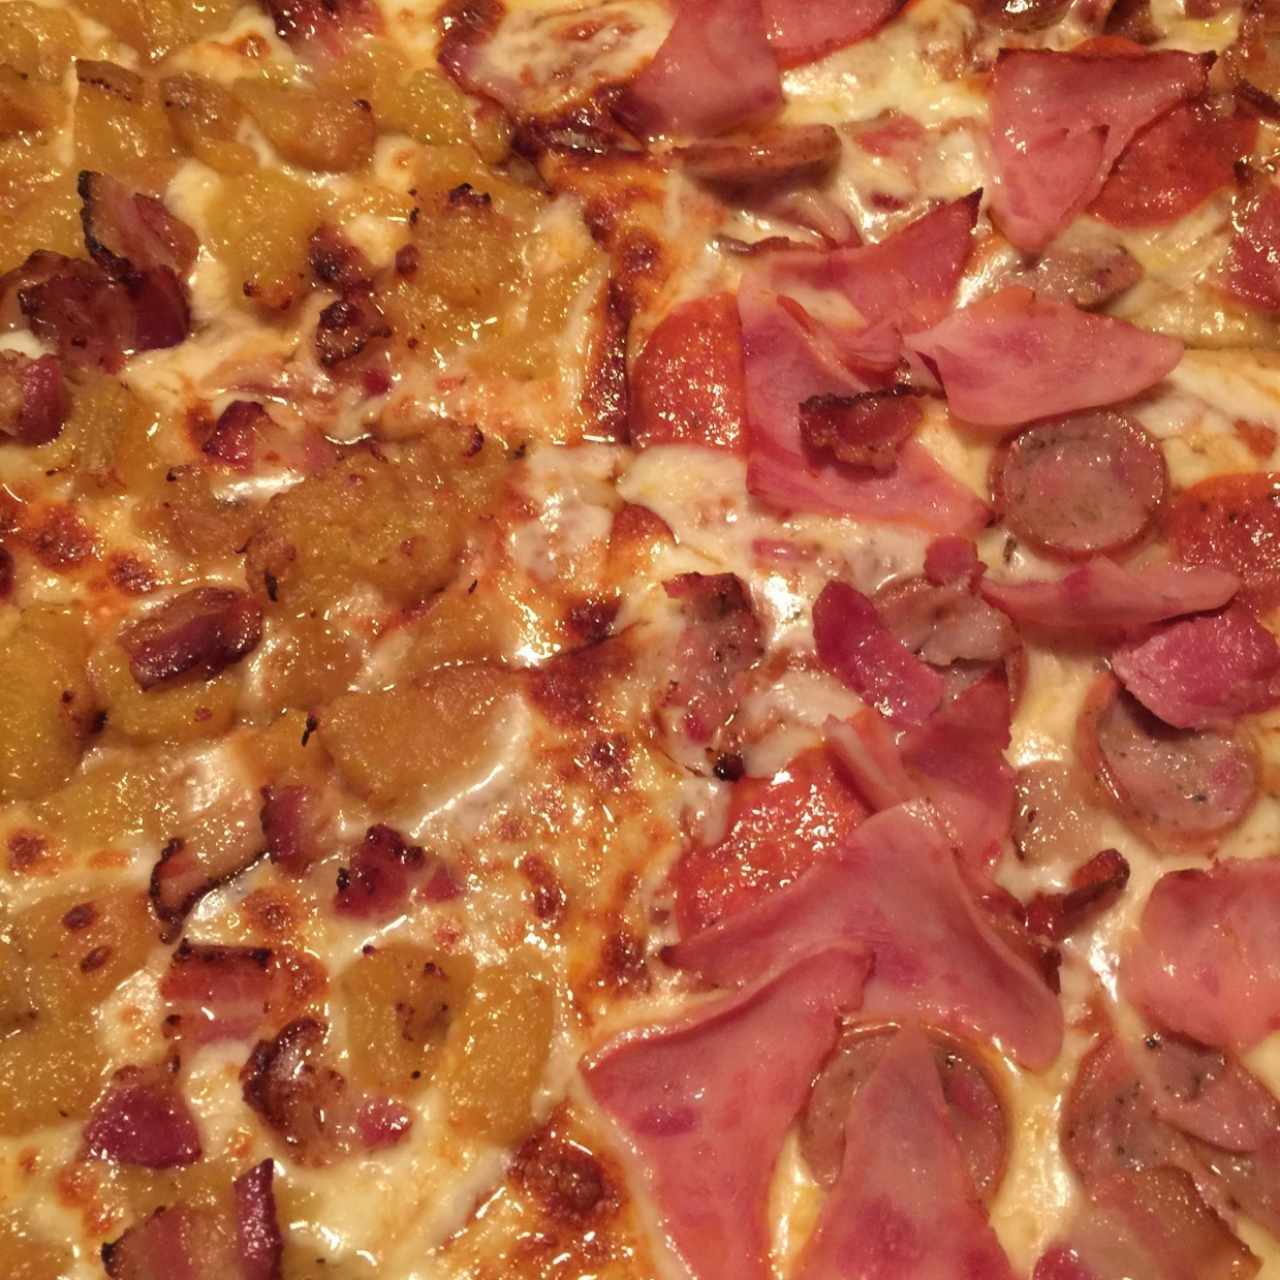 Chicho's pizza + Dolce tentazione